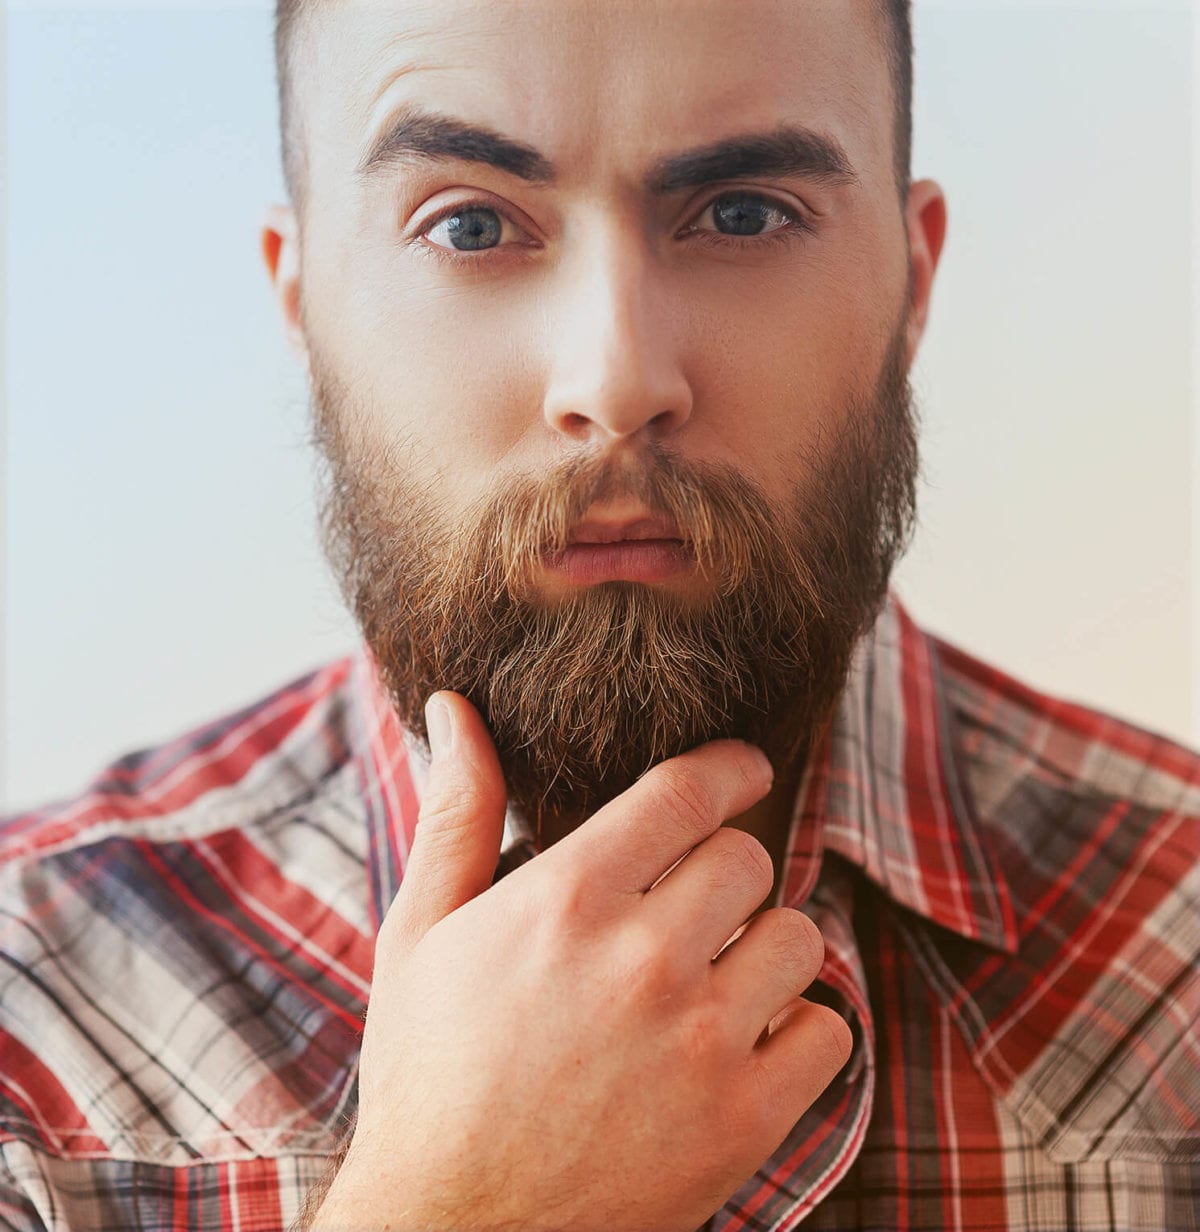 A young man strokes his beard